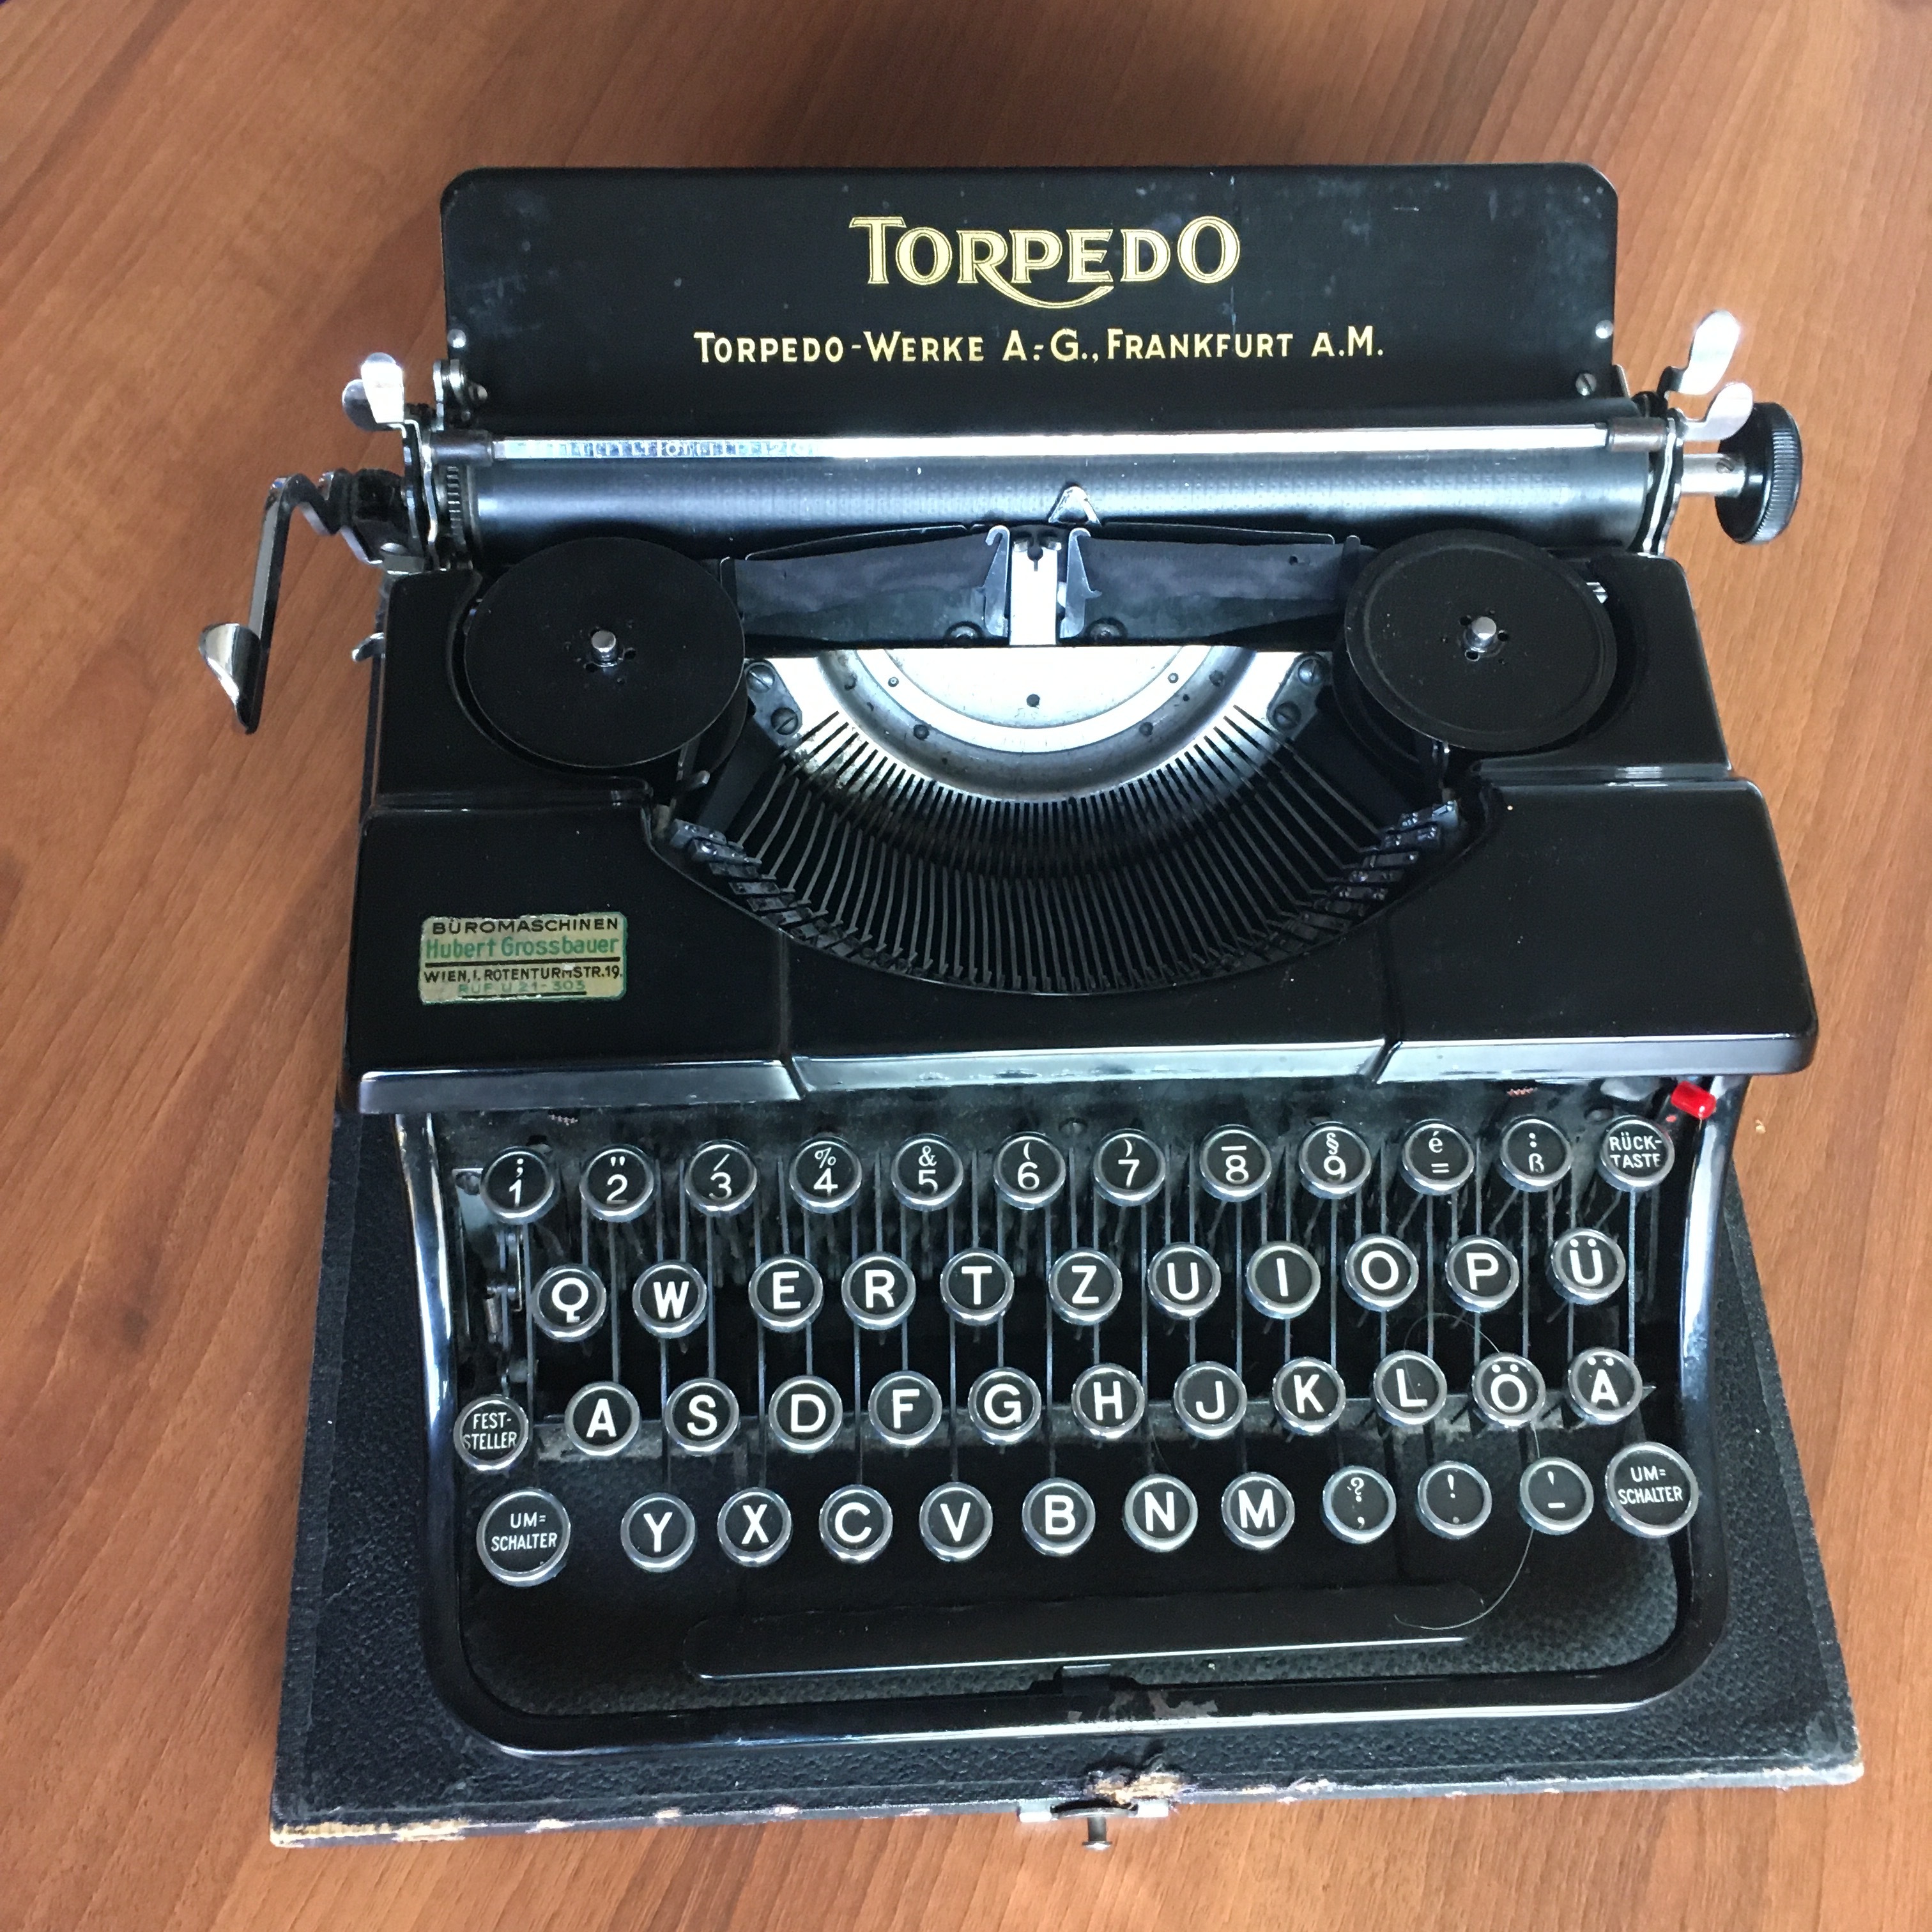 an old manual typewriter